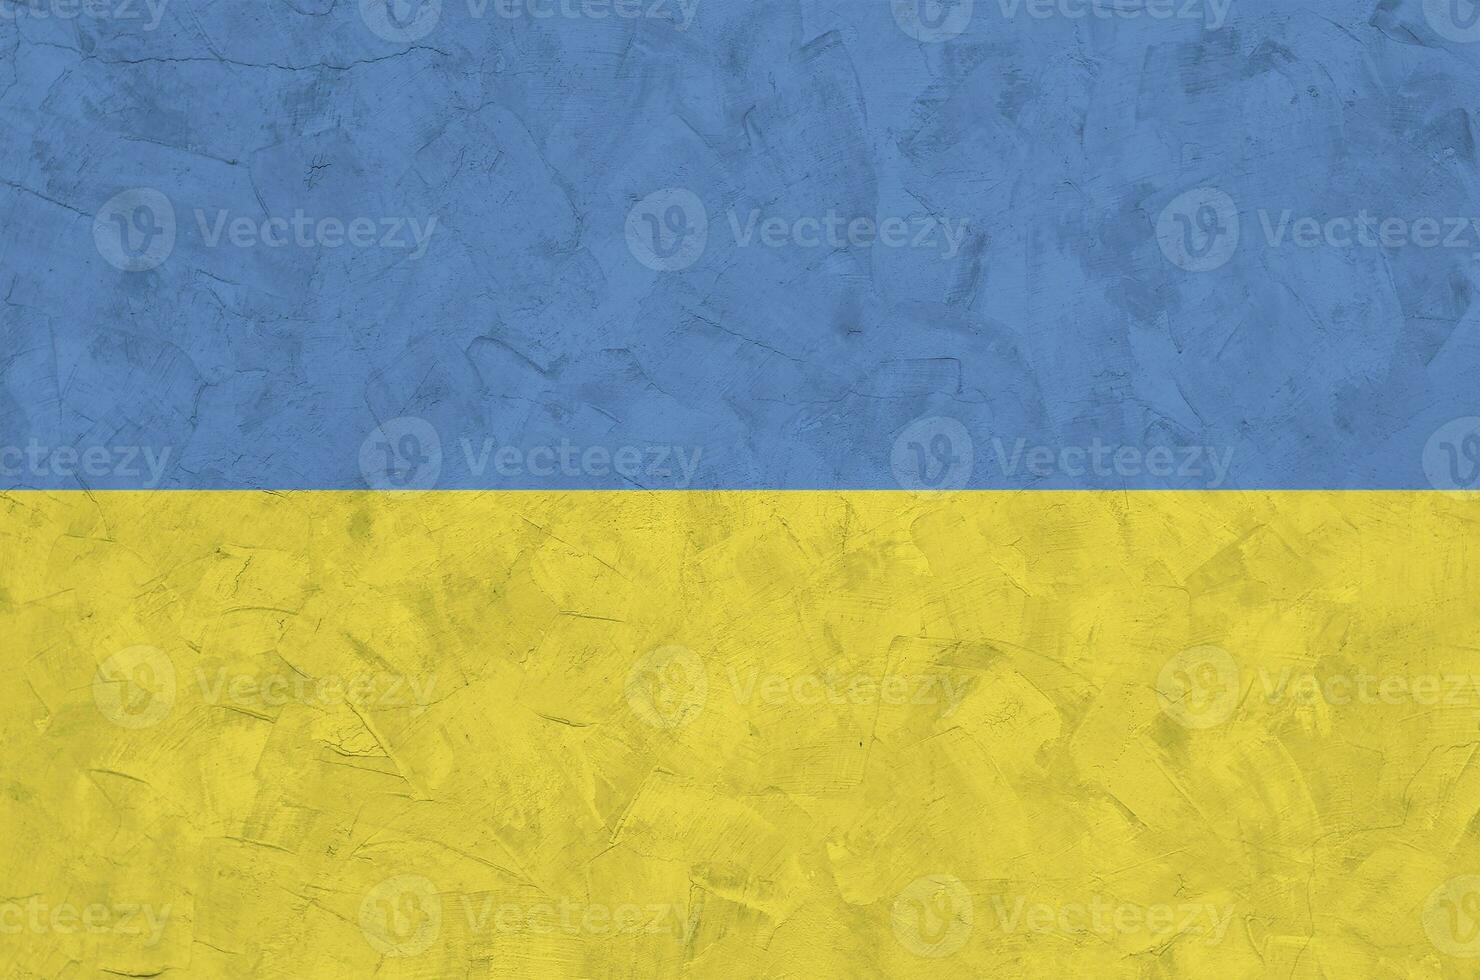 ukraina flagga avbildad i ljus måla färger på gammal lättnad putsning vägg. texturerad baner på grov bakgrund foto